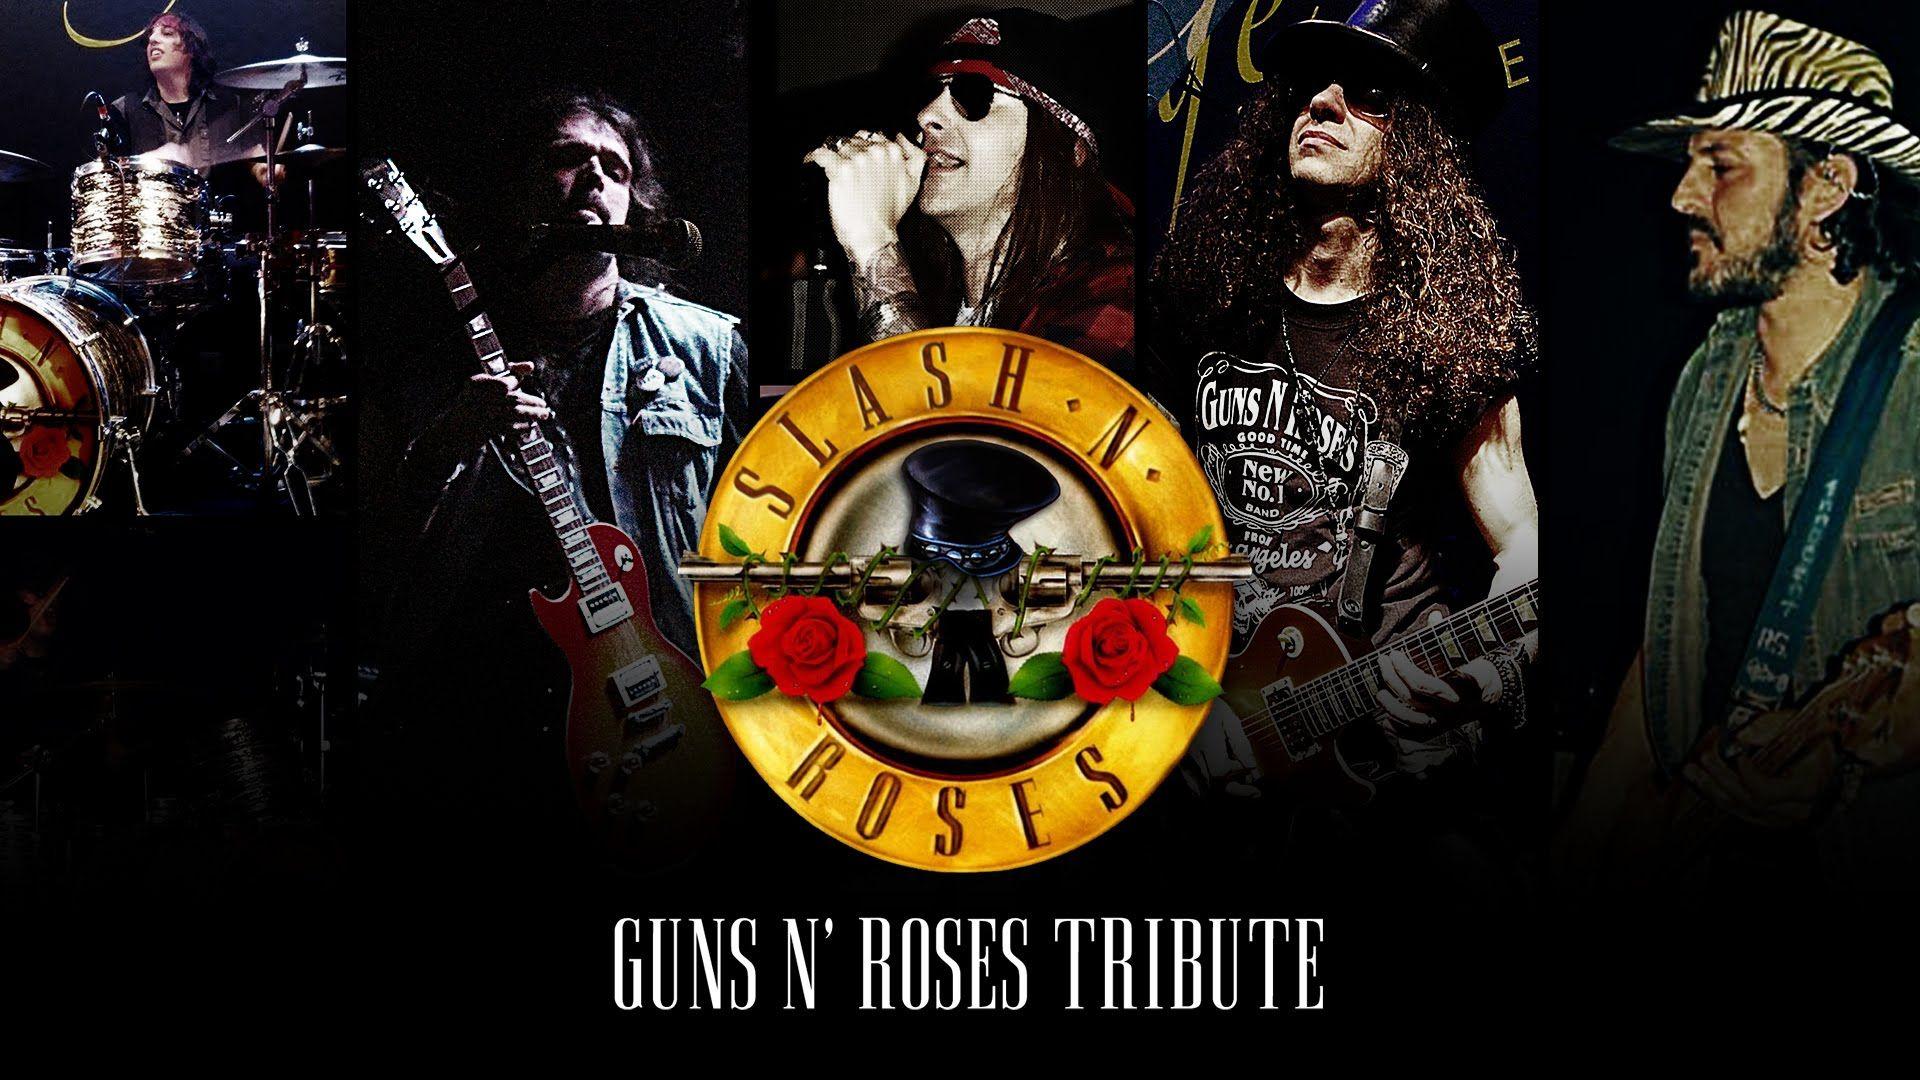 Slash N' Roses N' Roses Tribute